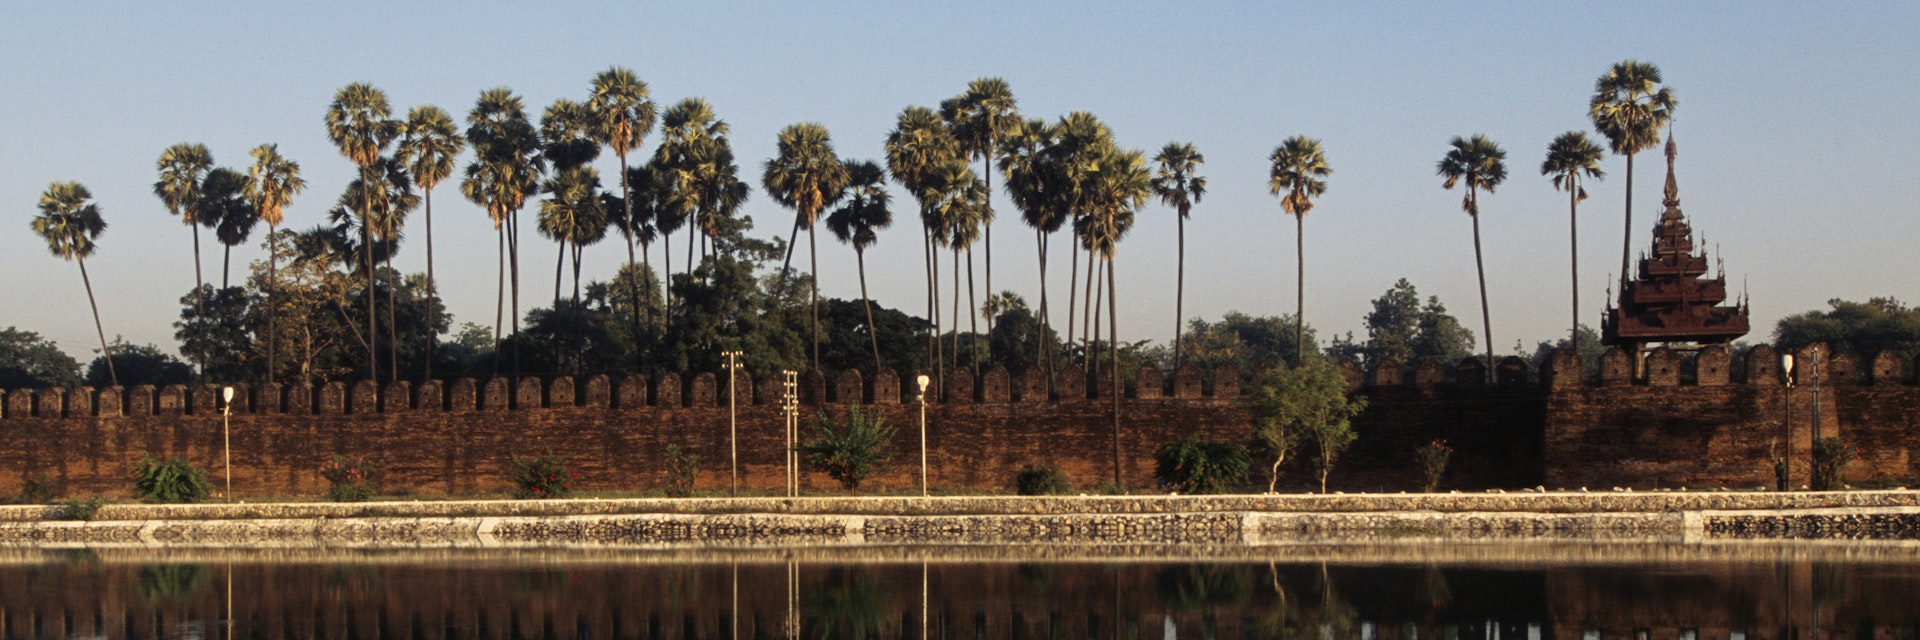 Walls of citadel which contains Mandalay Royal Palace, Mandalay, Myanmar